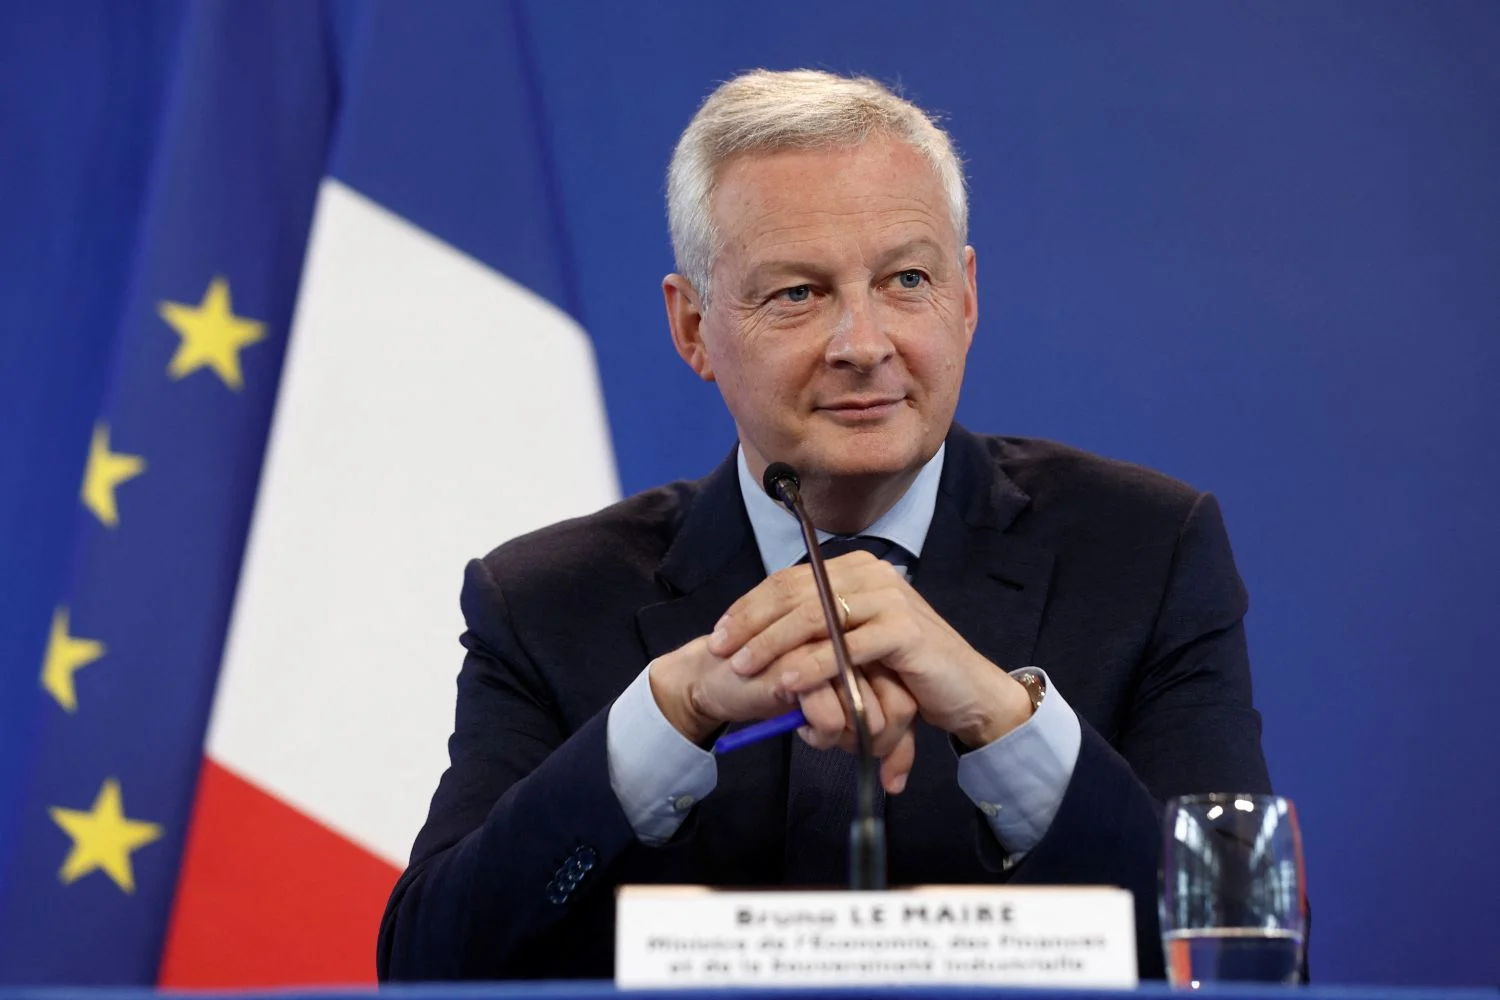 Le Maire enciende las alarmas en Francia con una mordaz crítica al programa del NFP